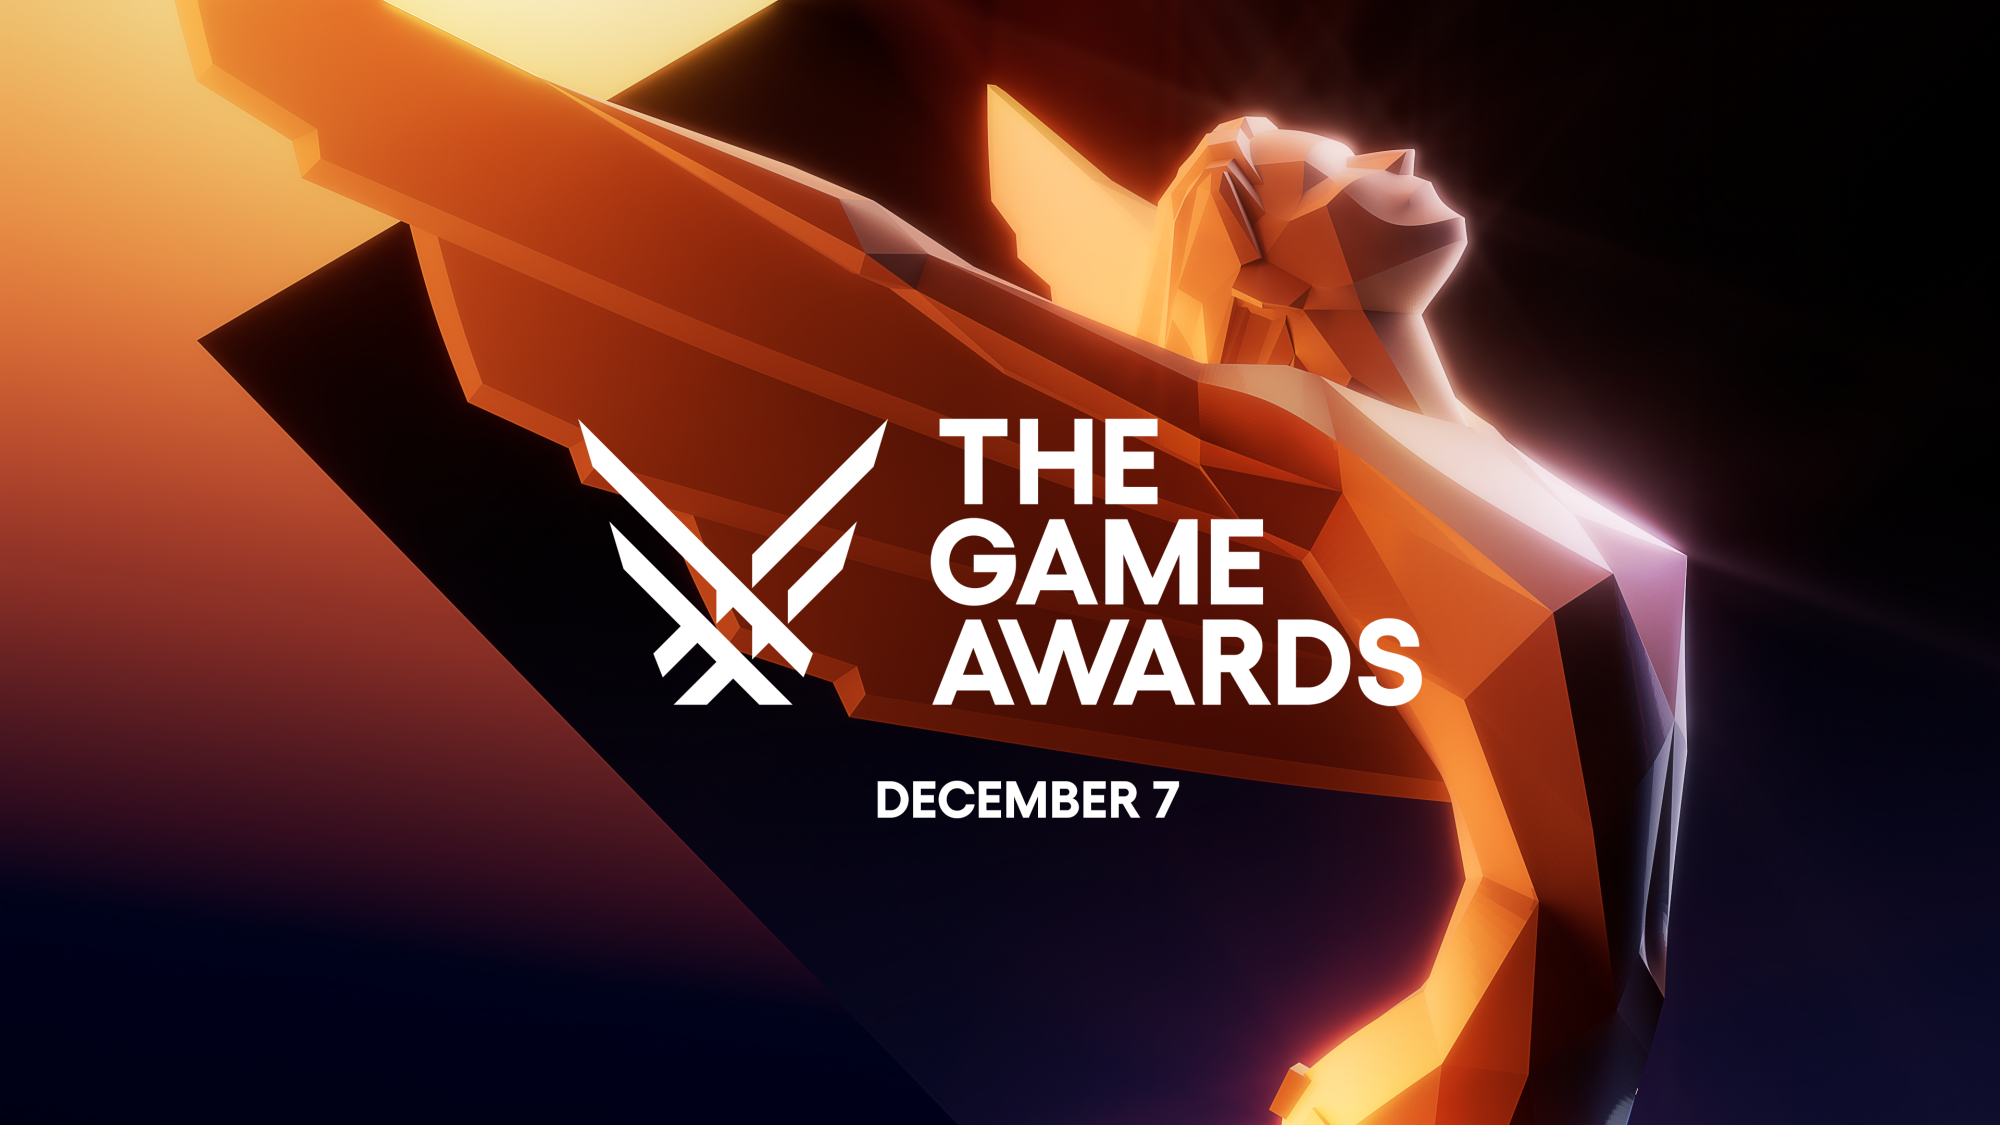 The Game Awards 2021: Best Multiplayer Game Winner